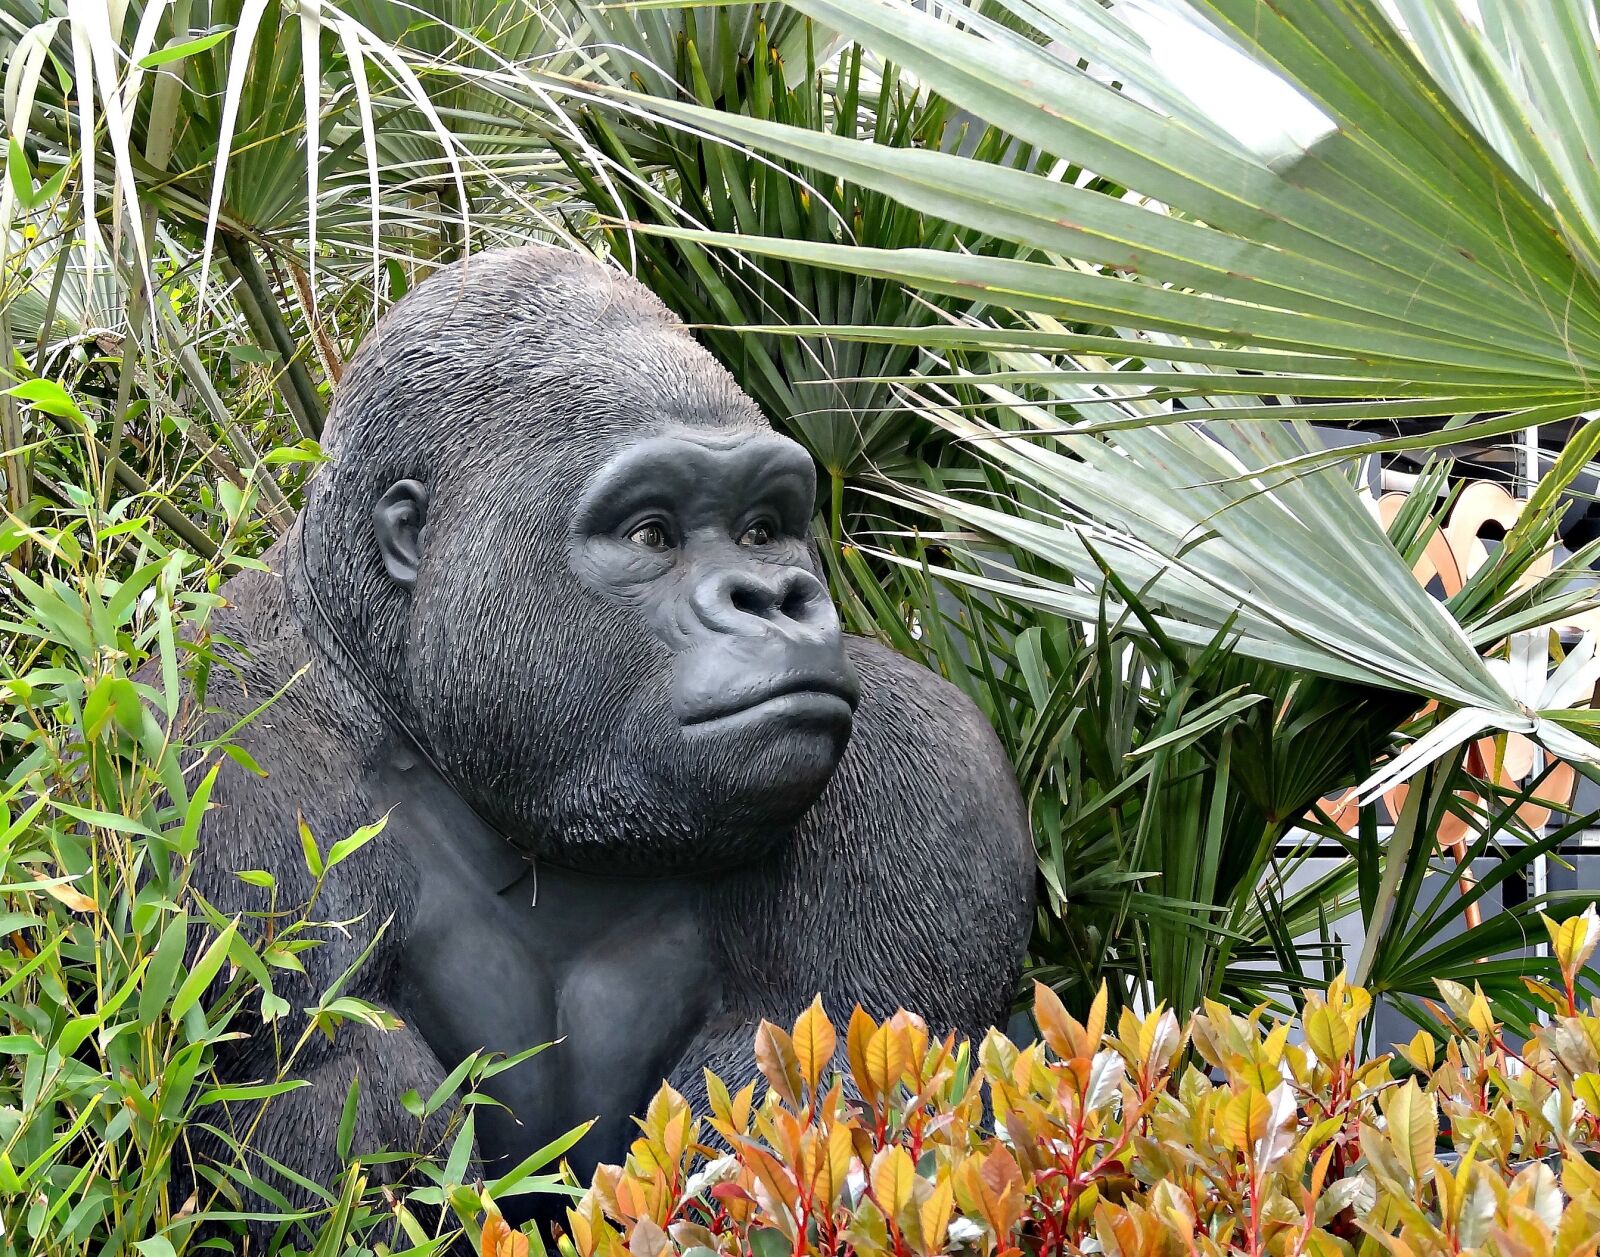 Sony Cyber-shot DSC-HX20V sample photo. Animal, gorilla, fake photography